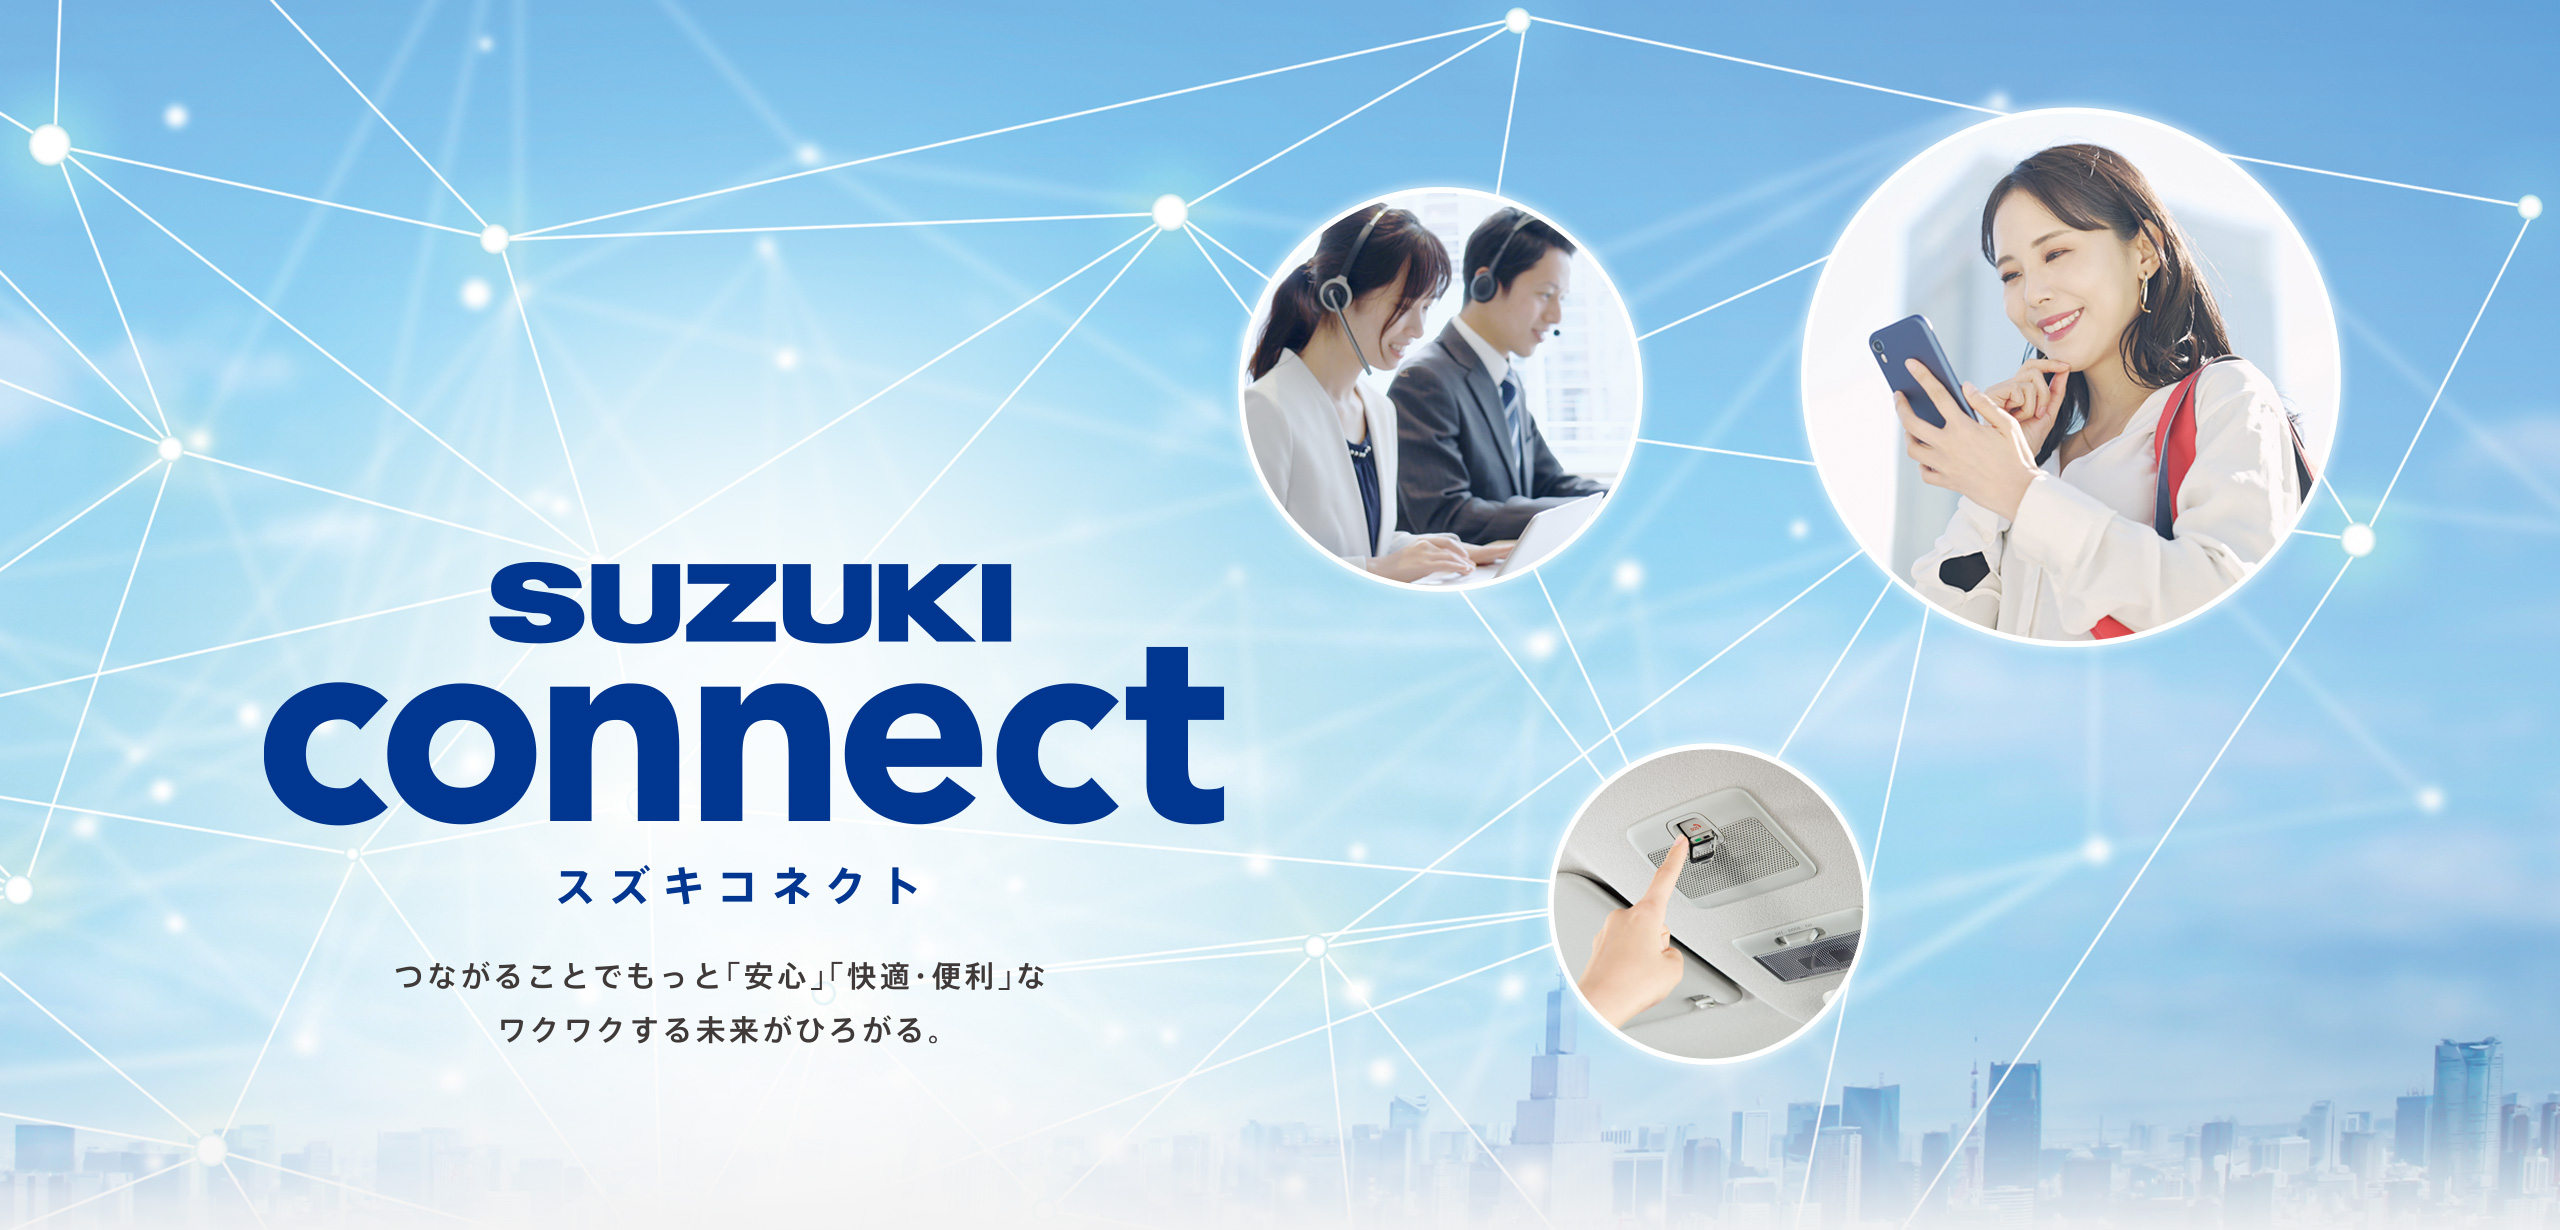 SUZUKI connect 「つながる」で安心・快適・便利